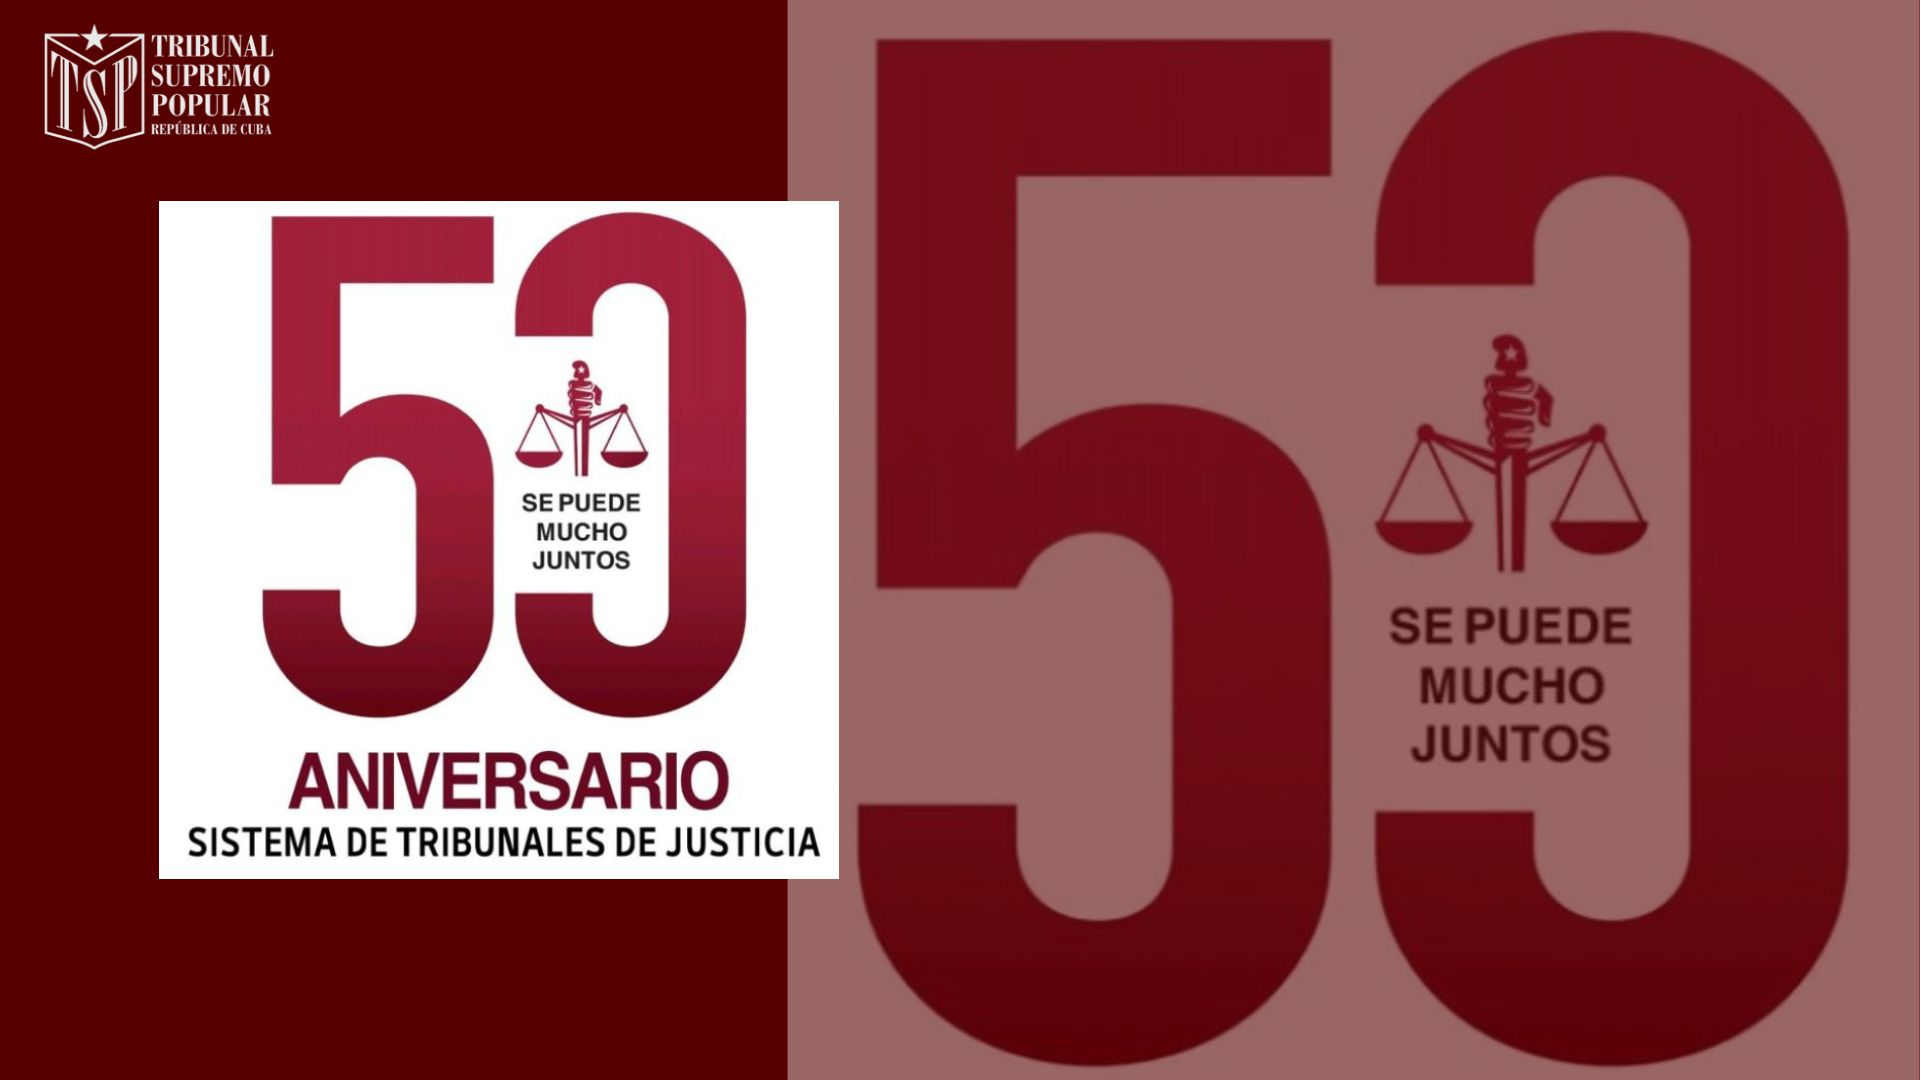 Camagüey célèbre le 50e anniversaire du système judiciaire populaire à Cuba